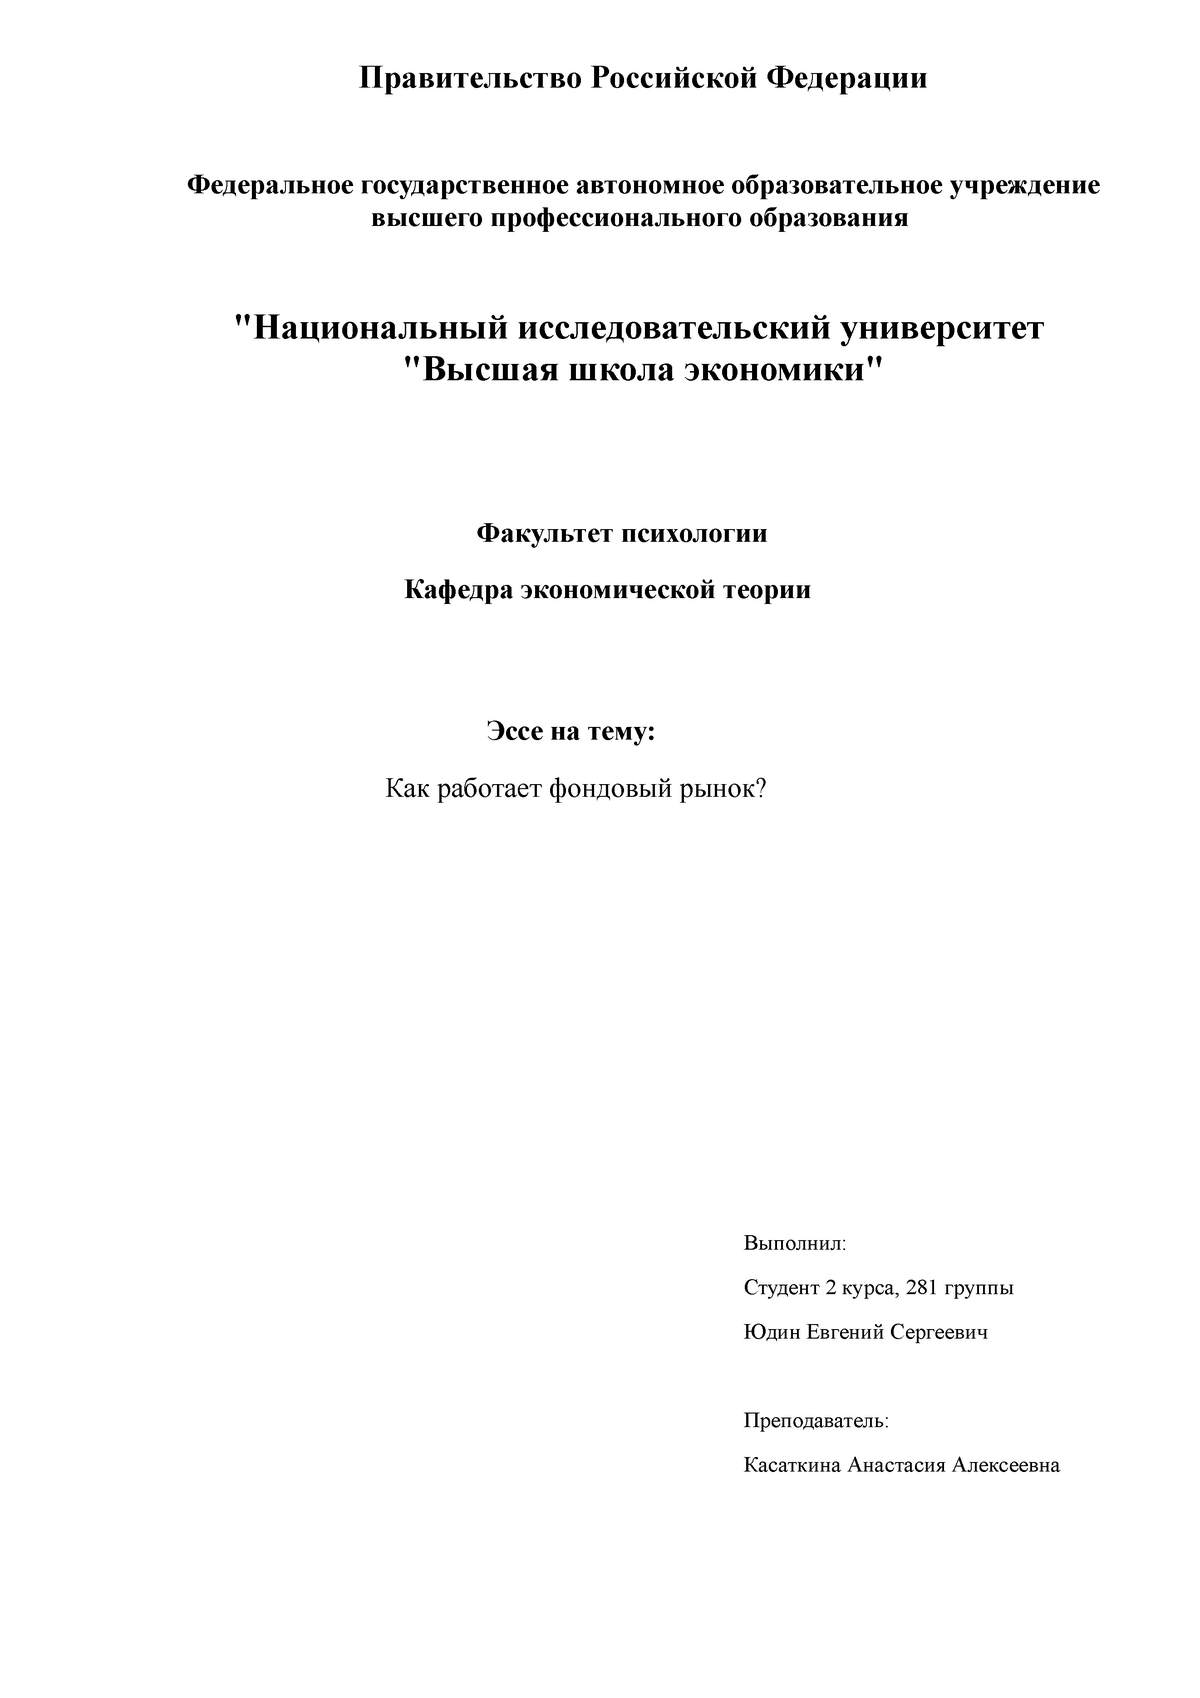 Реферат: Операции российских банков на фондовом рынке 2